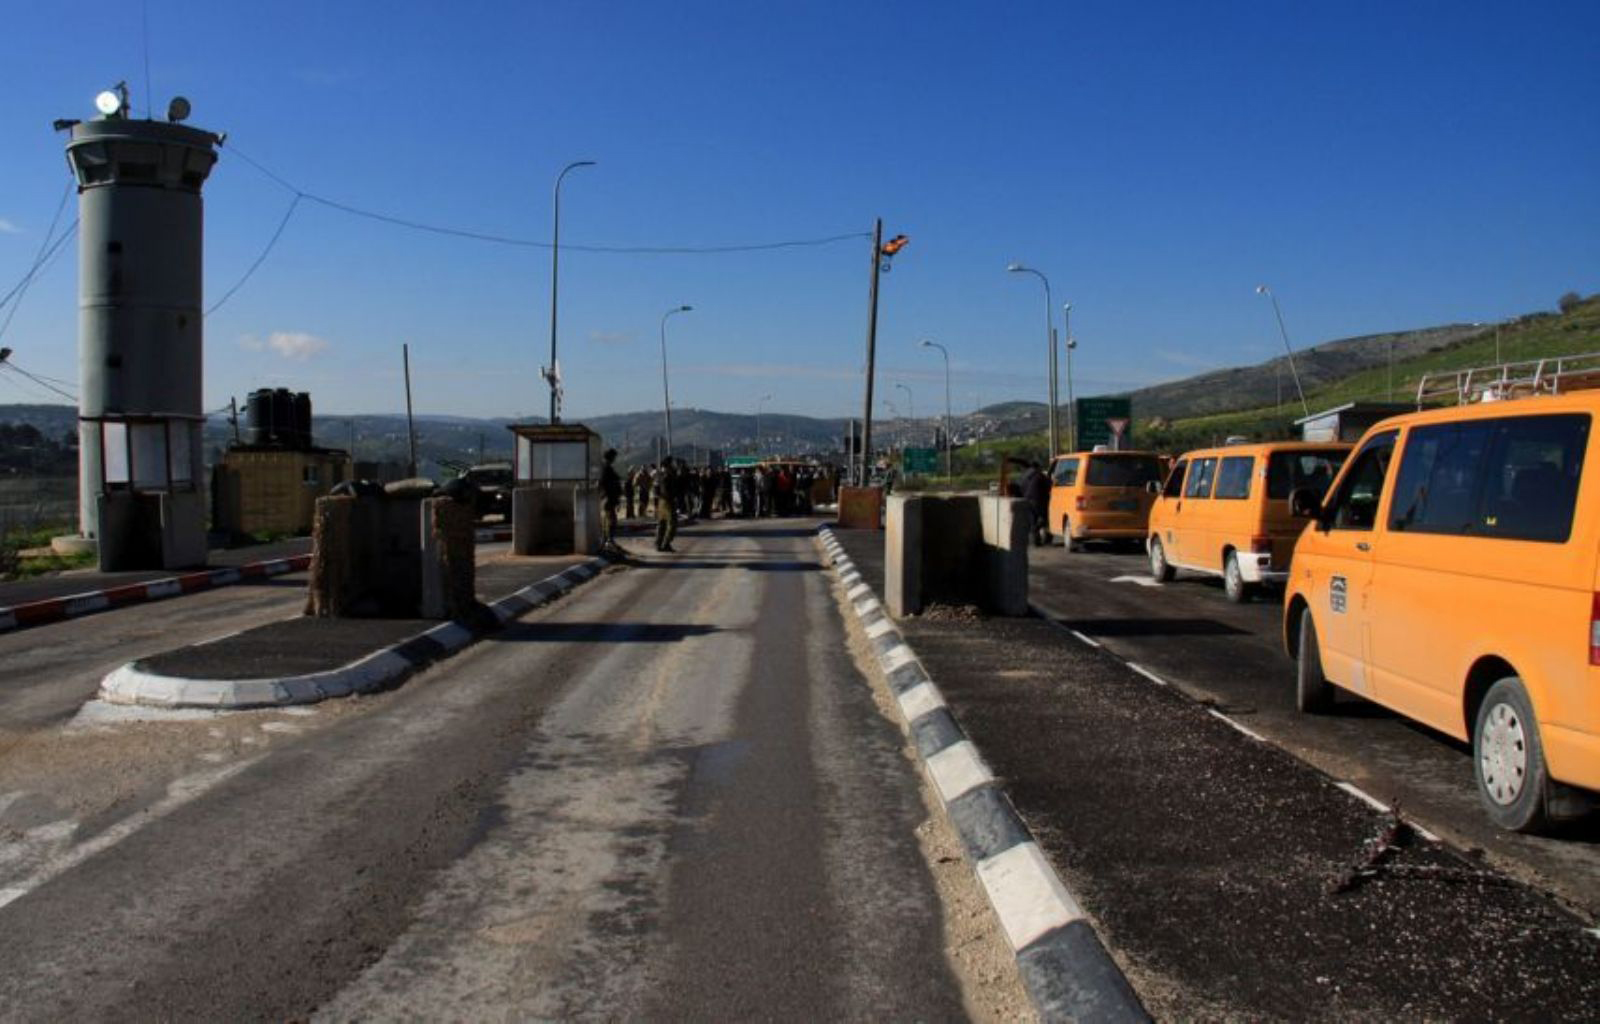 الاحتلال يغلق حاجز حوارة وتجمع للمستوطنين جنوب نابلس